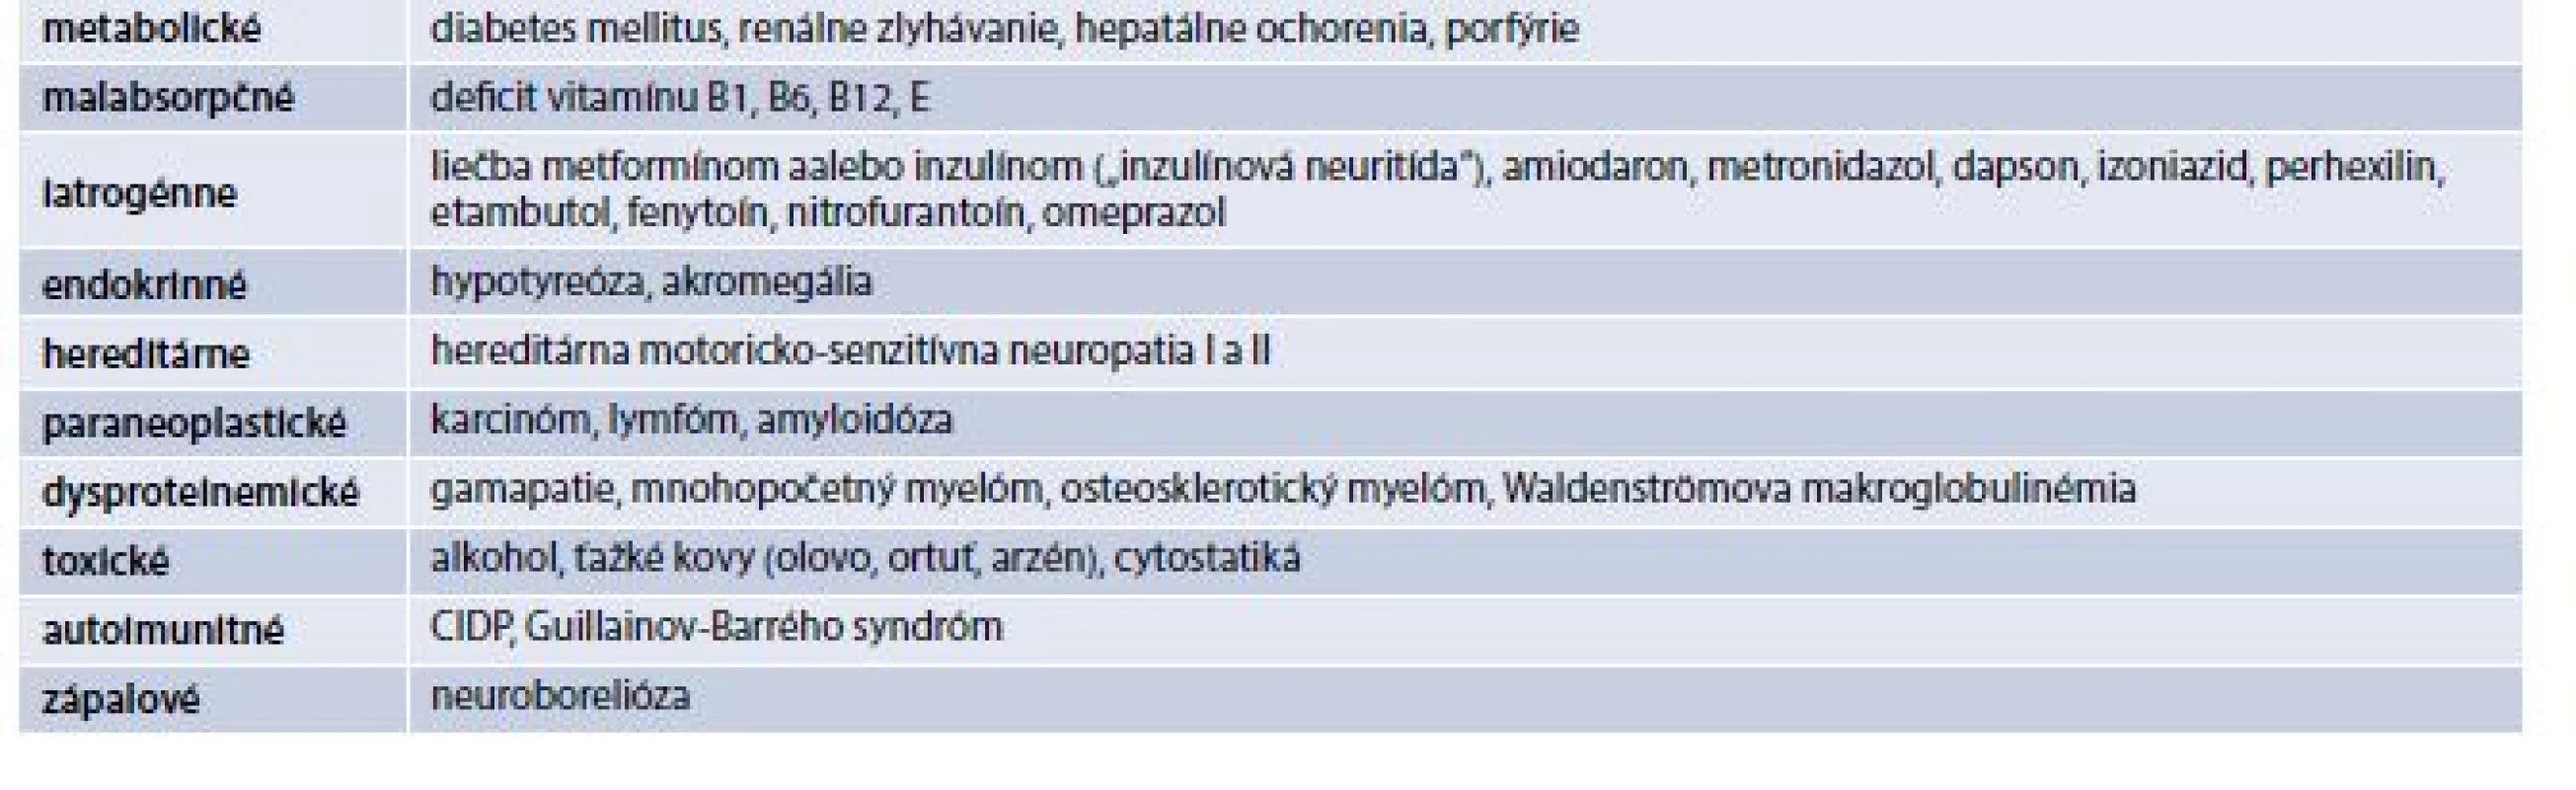 Diferenciálna diagnostika PNP u pacientov s DM. Upravené podľa [18]